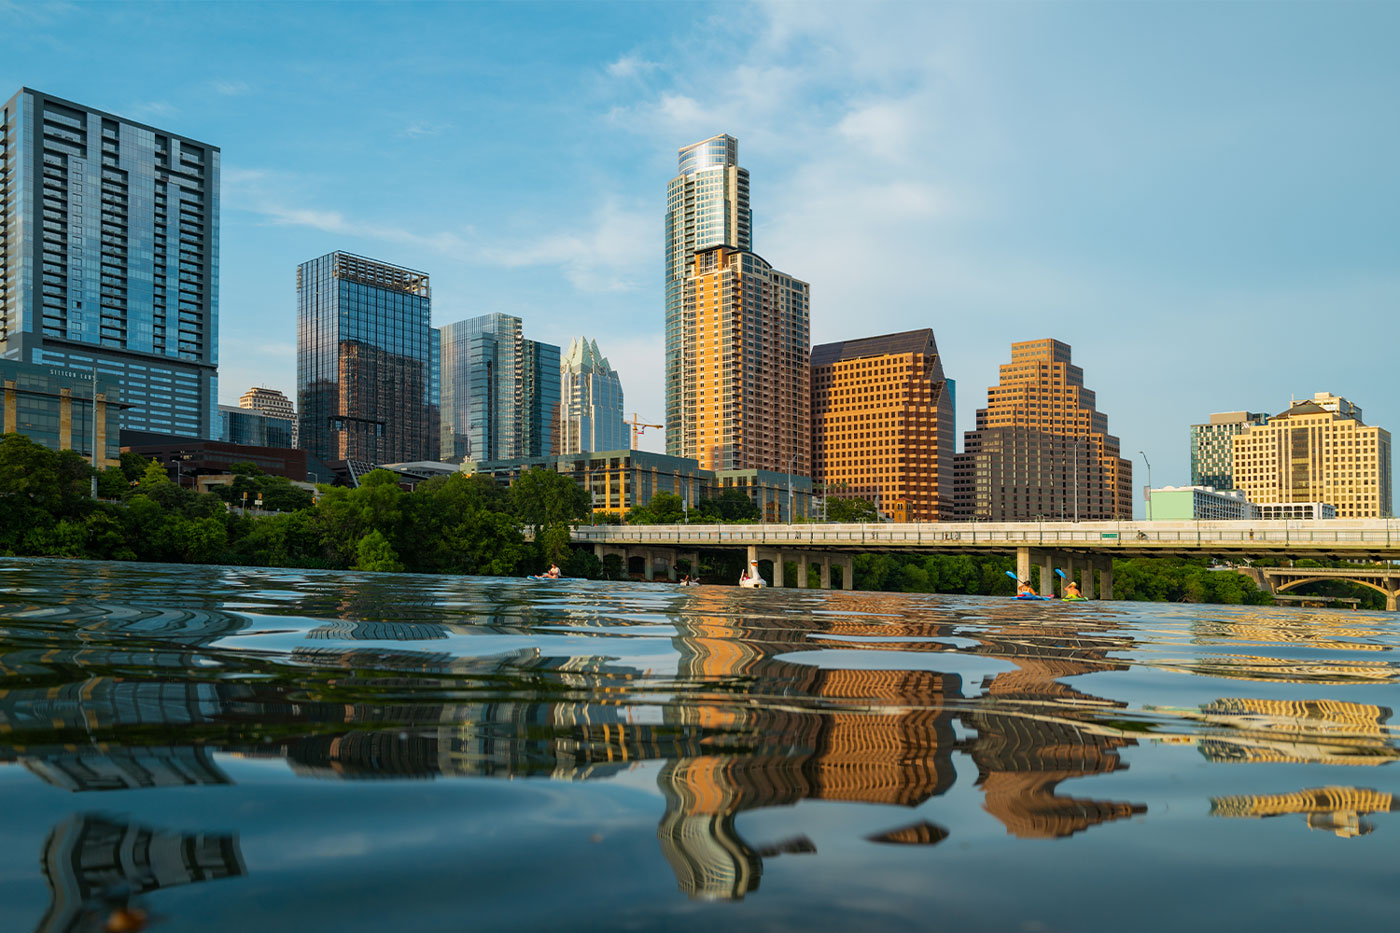 Austin Texas skyline along the river